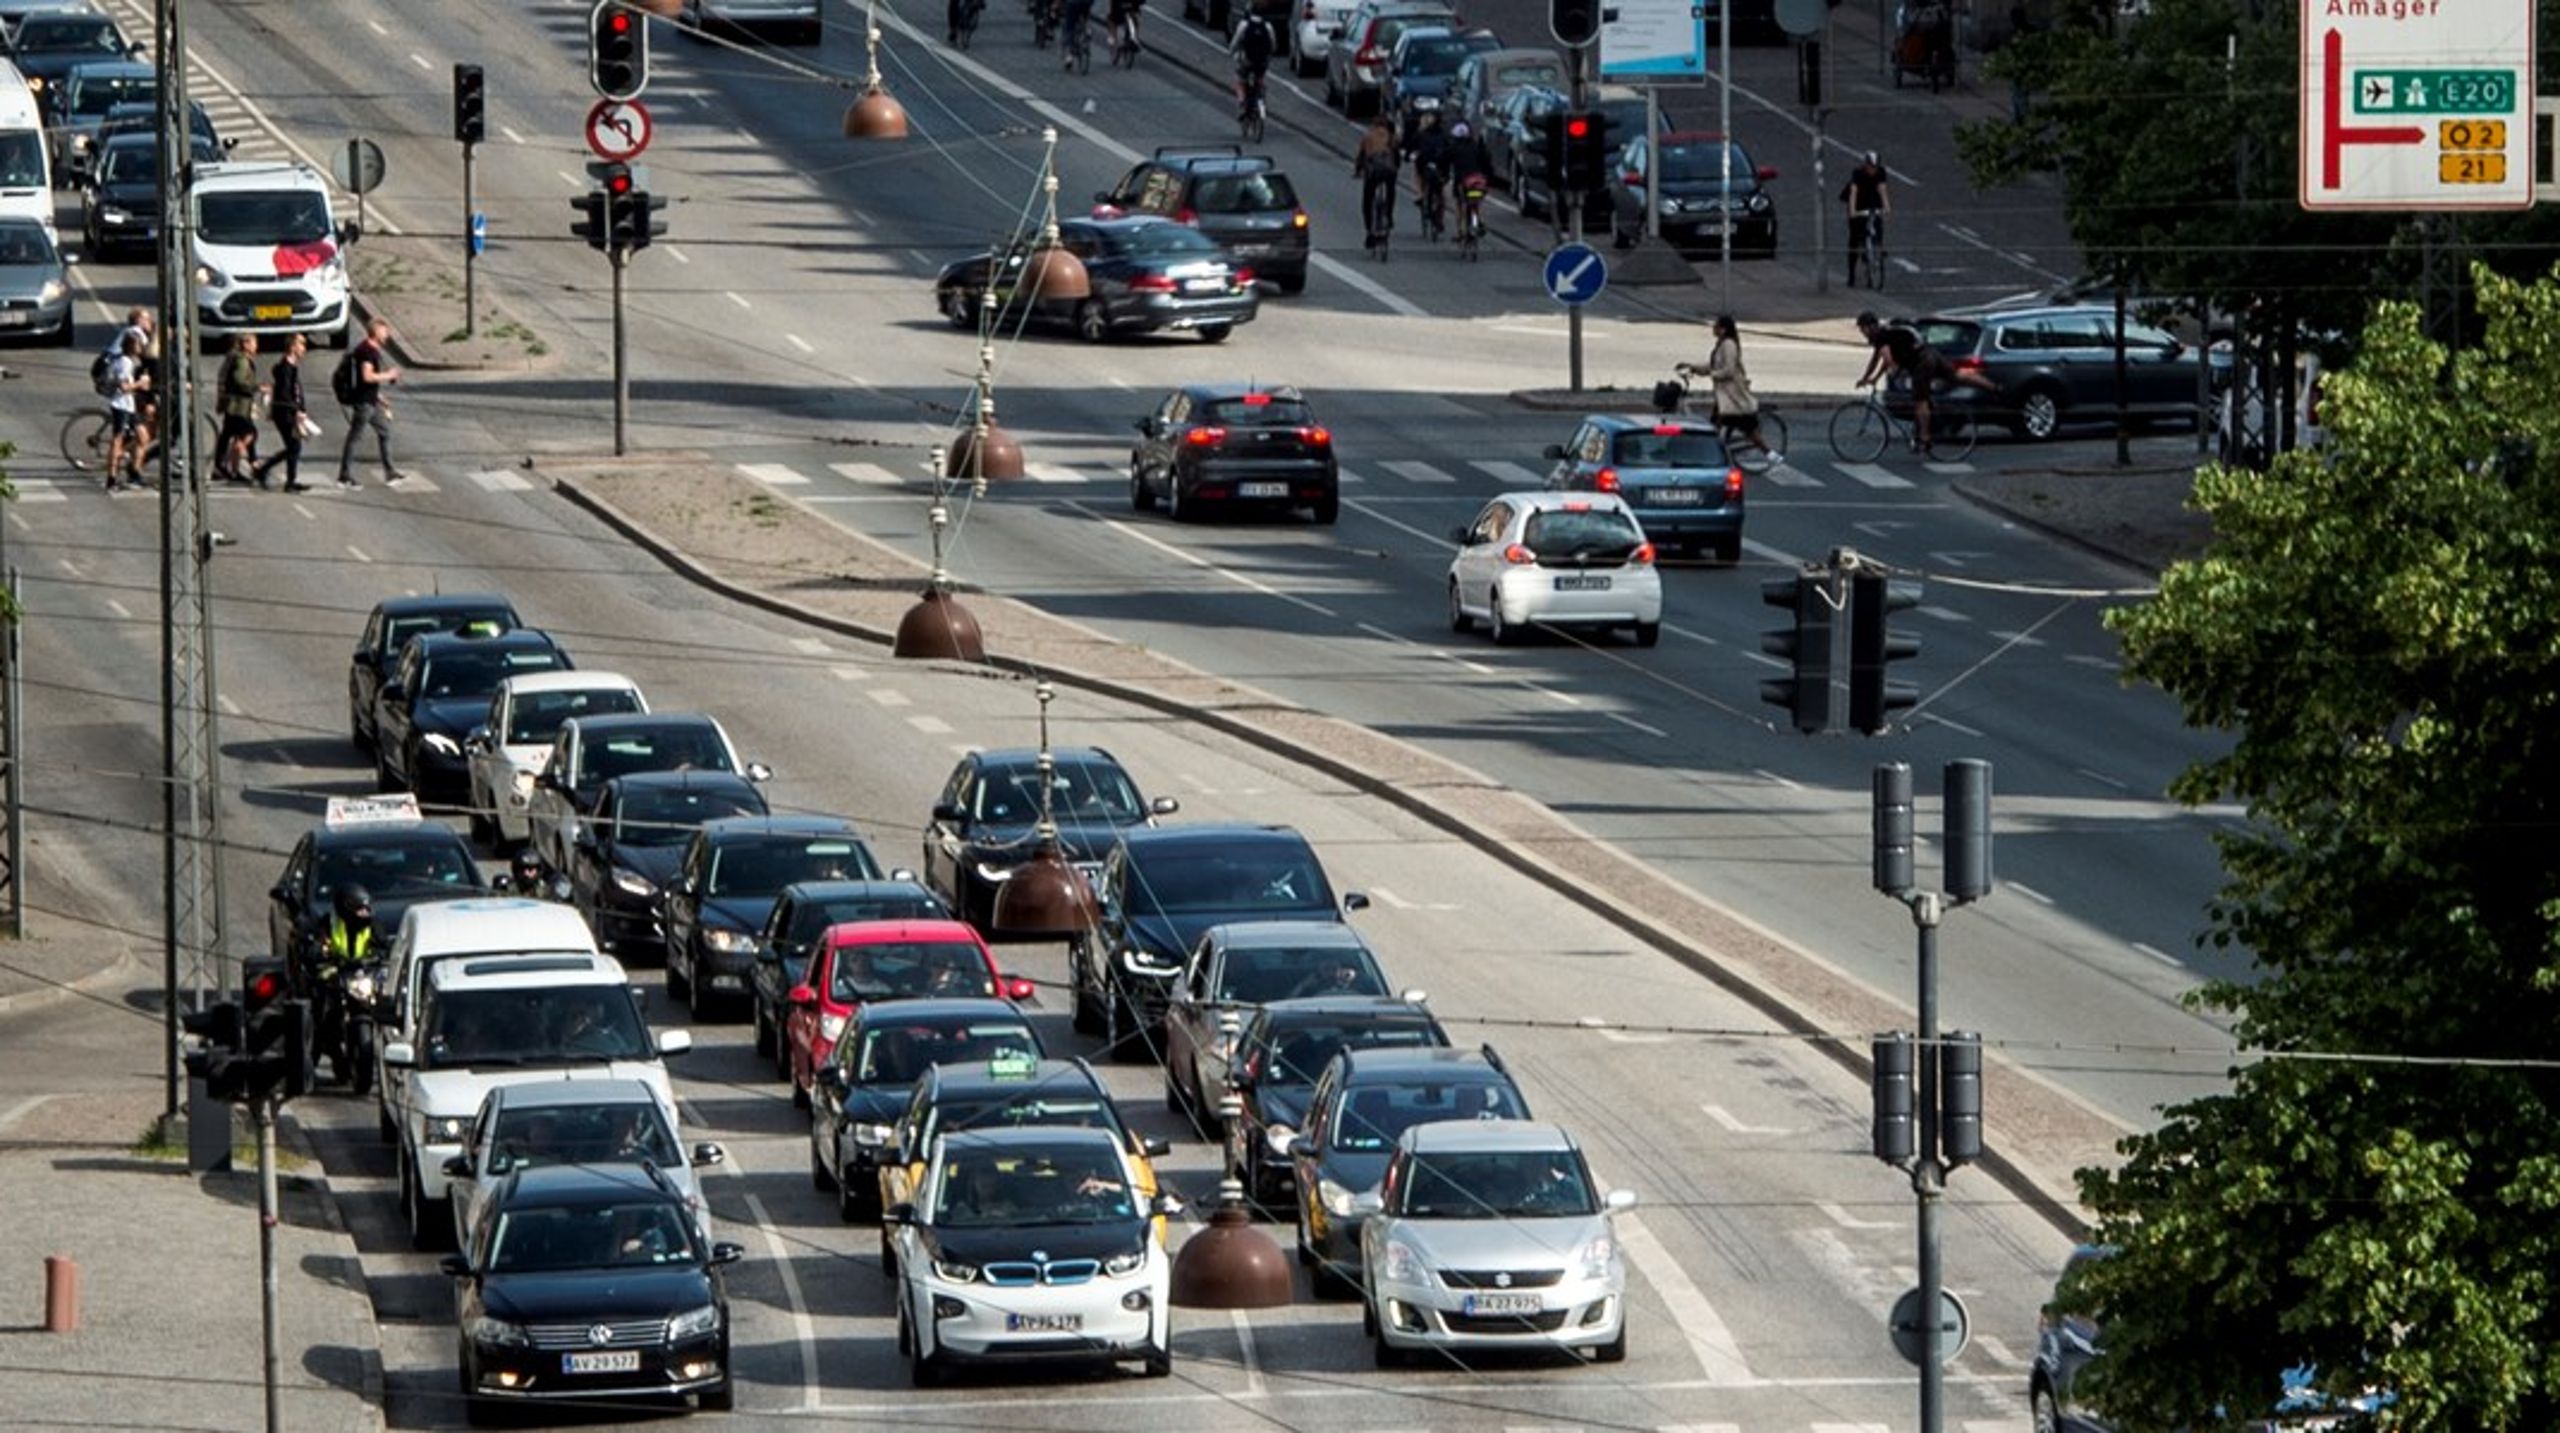 I en ny analyse foreslår tænketanken Concito at indføre en vejafgift oveni de eksisterende bilafgifter. Pengene skal bruges på de borgere, der bliver generet af trafikken på grund af&nbsp;støj, partikelforurening eller uheld, lyder det.